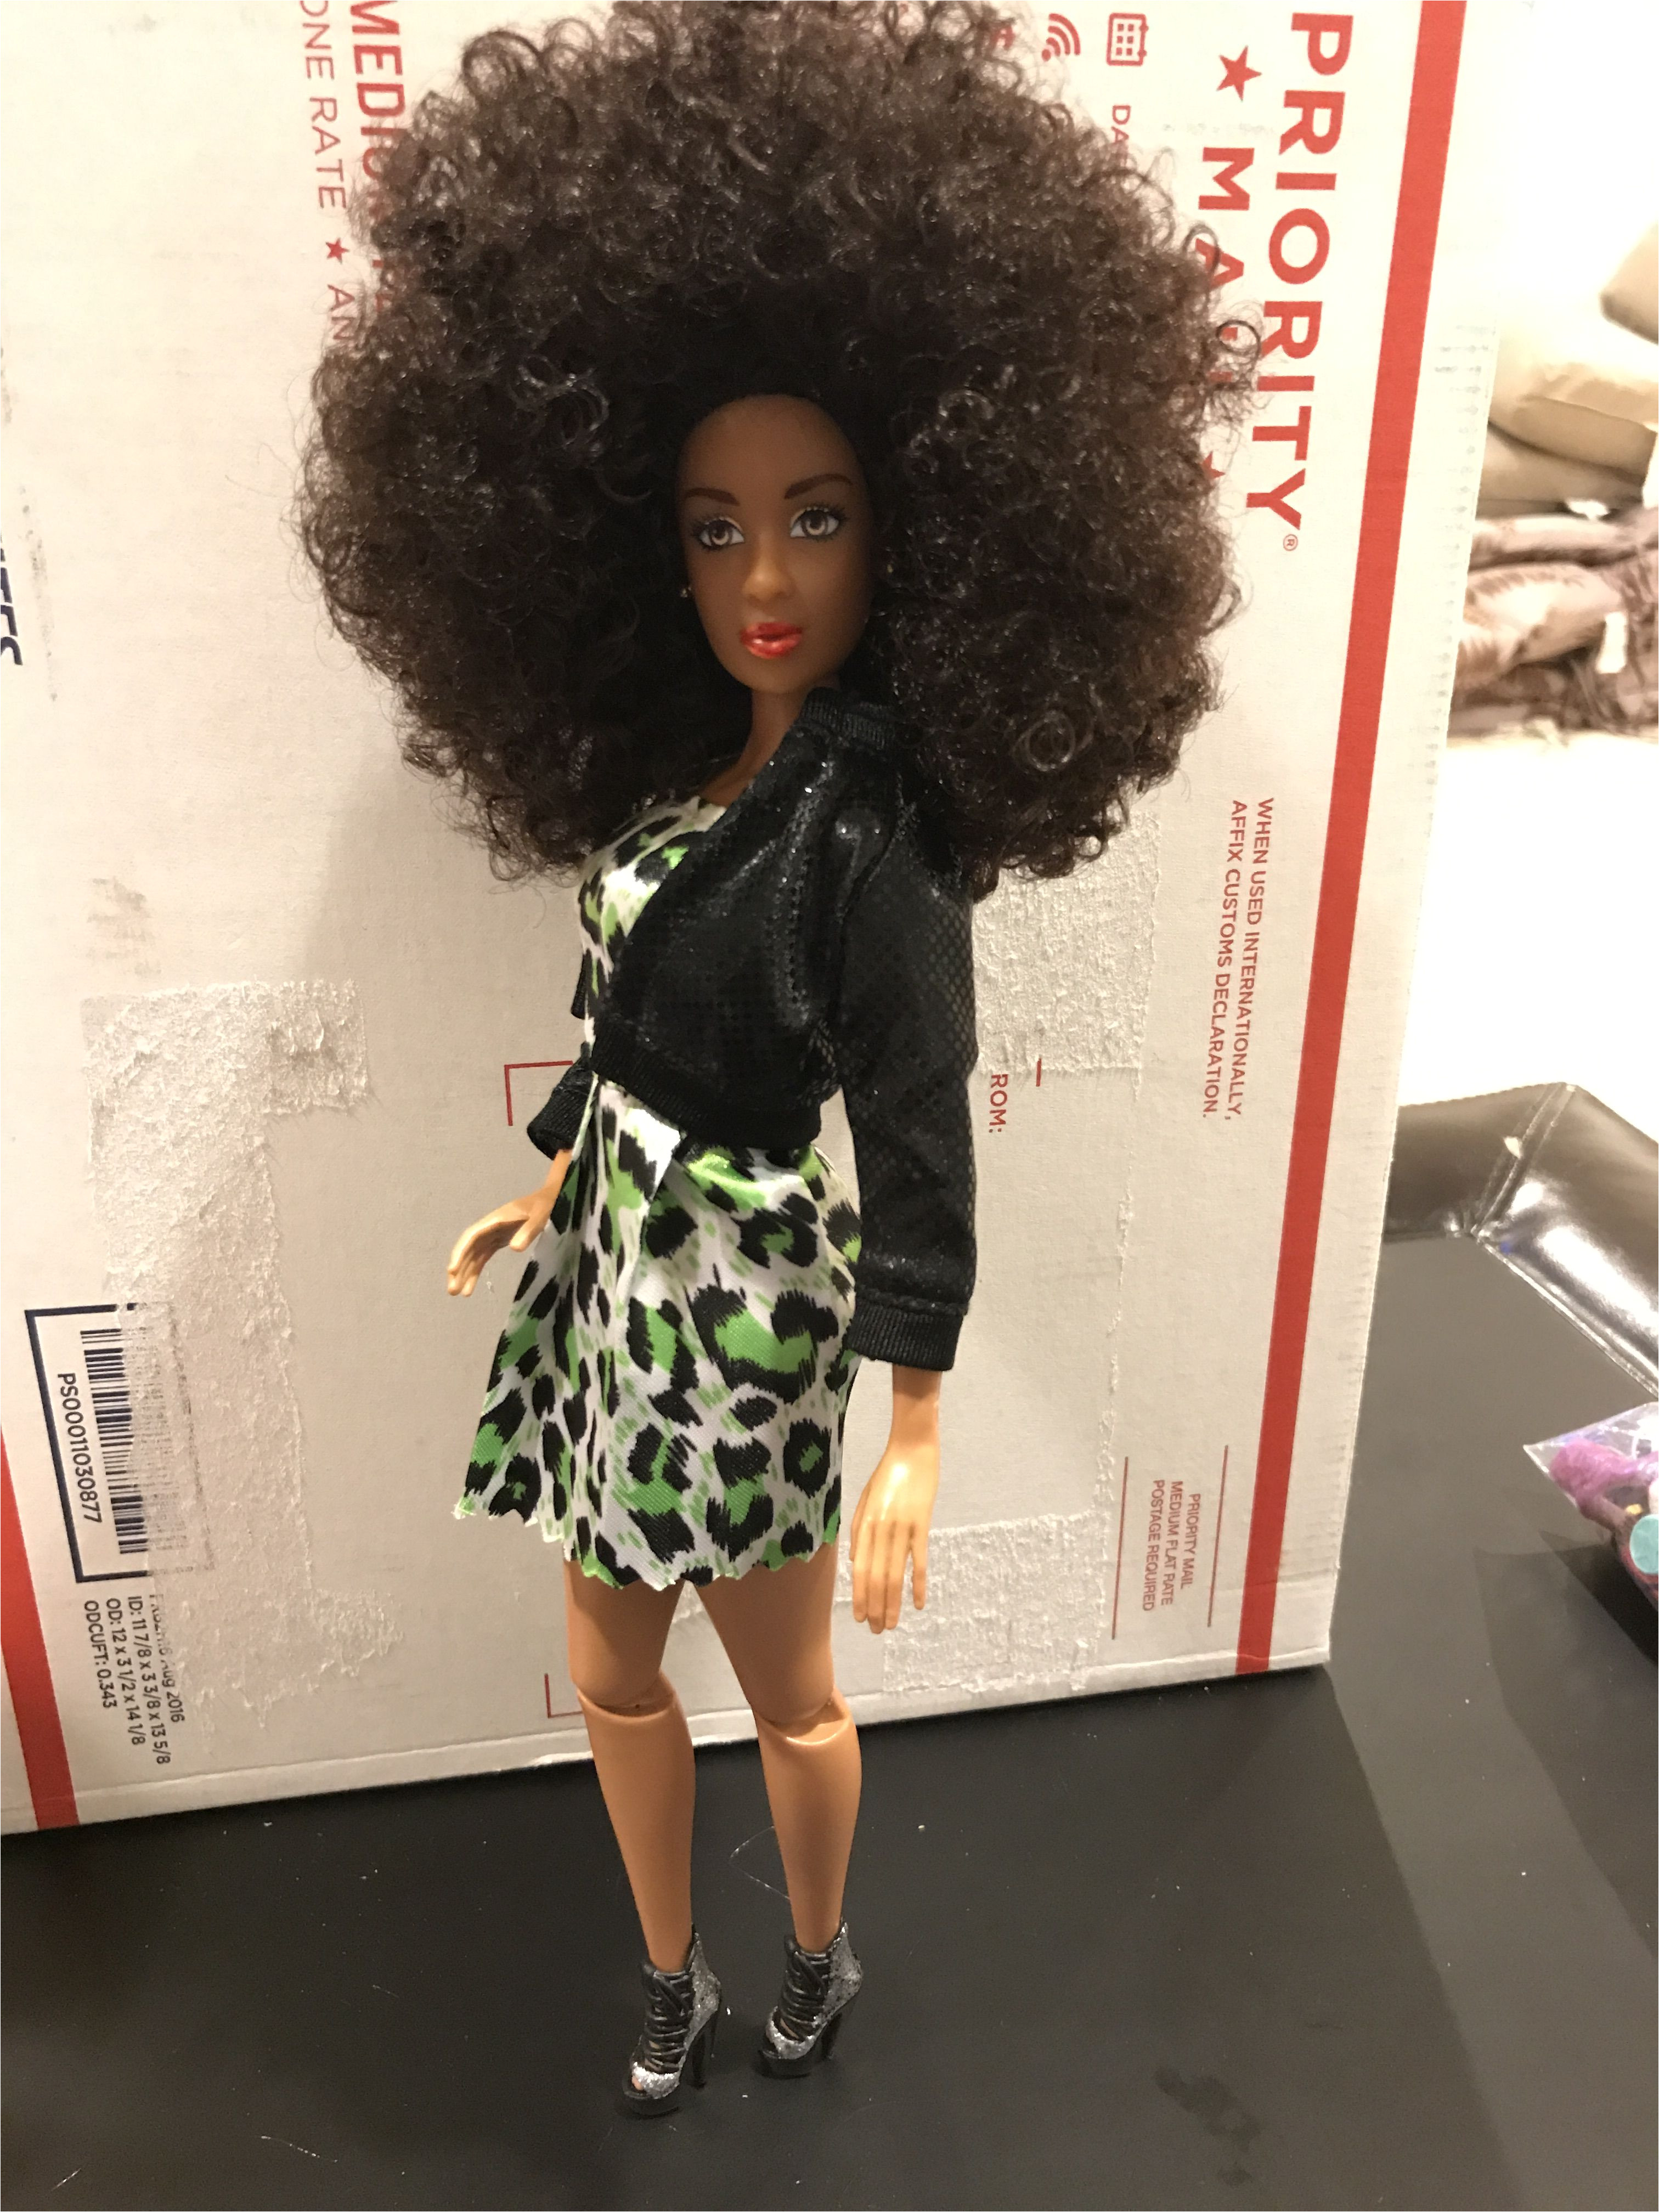 African American Dolls Black Barbie Hello Dolly Barbie Dolls Fashion Dolls Natural Hair Black Women Random Stuff Dolls